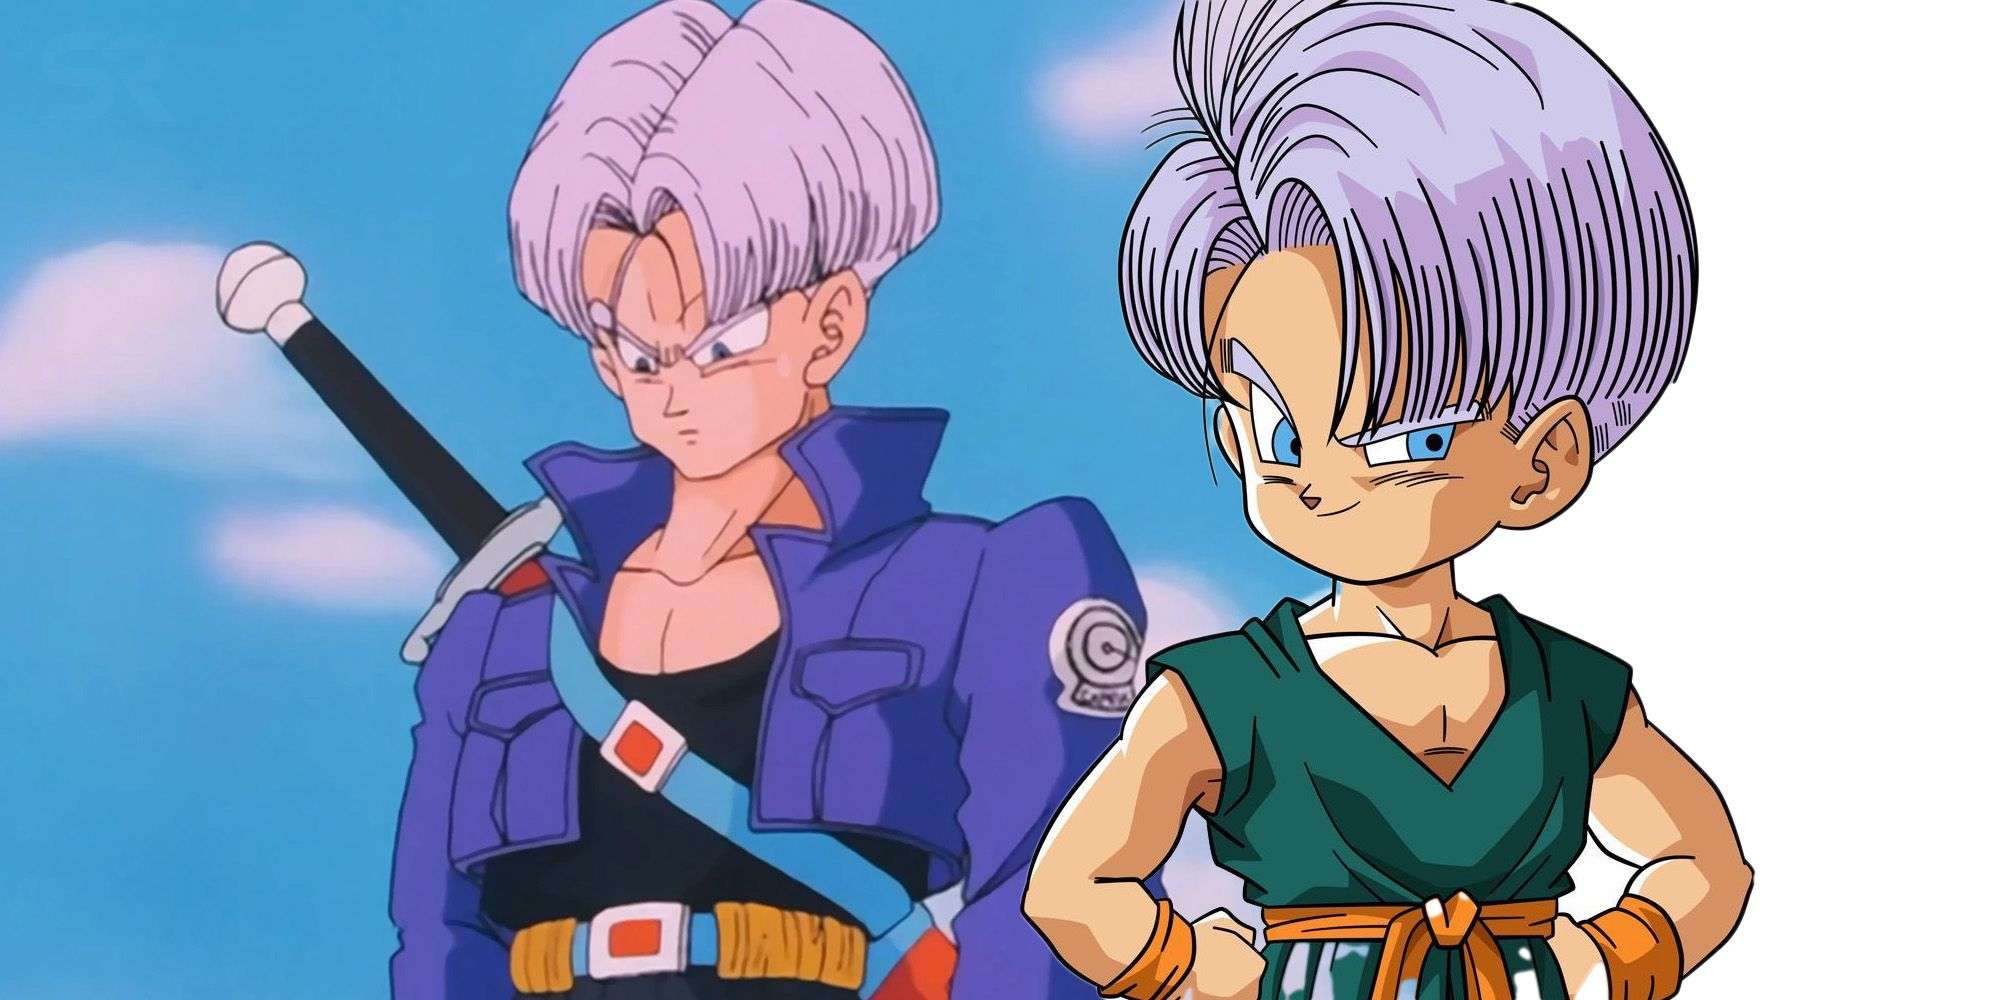 Dragon Ball: Điểm khác biệt lớn nhất giữa Trunks và Future Trunks